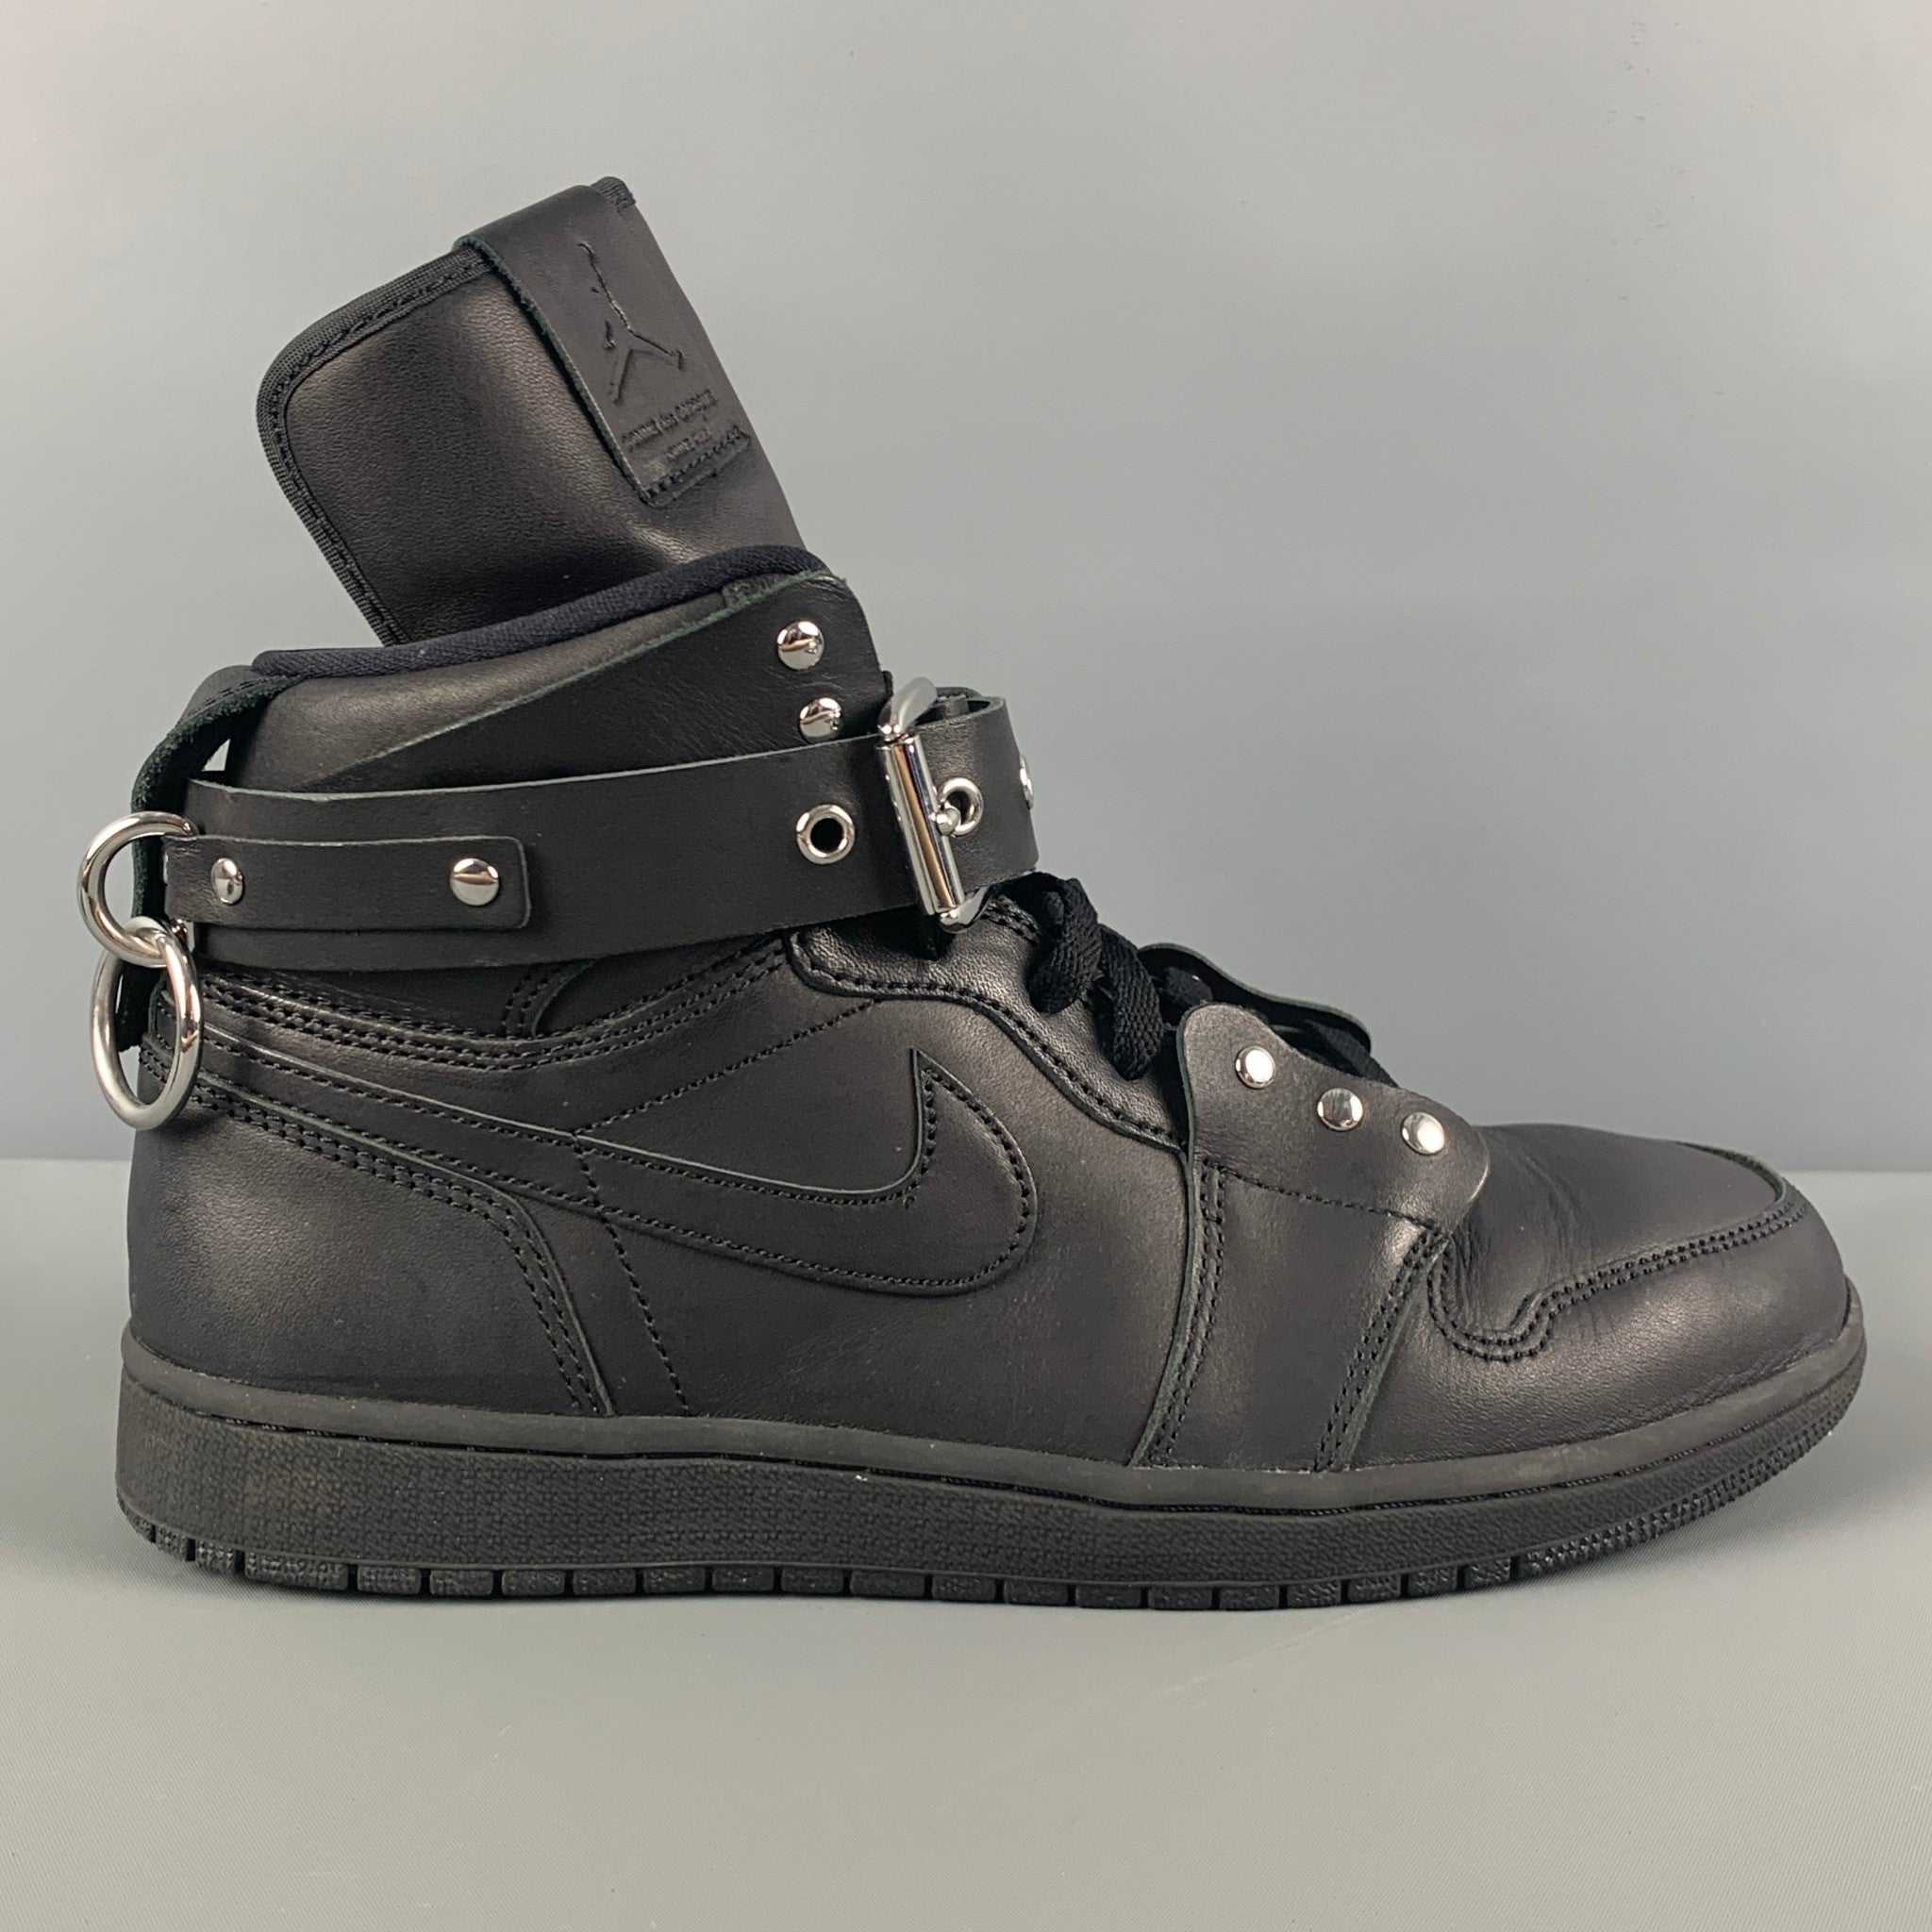 COMME des GARCONS x AJ1 FW19 Bondage Size 10 Black Leather High Top Sneakers Sui Generis Designer Consignment